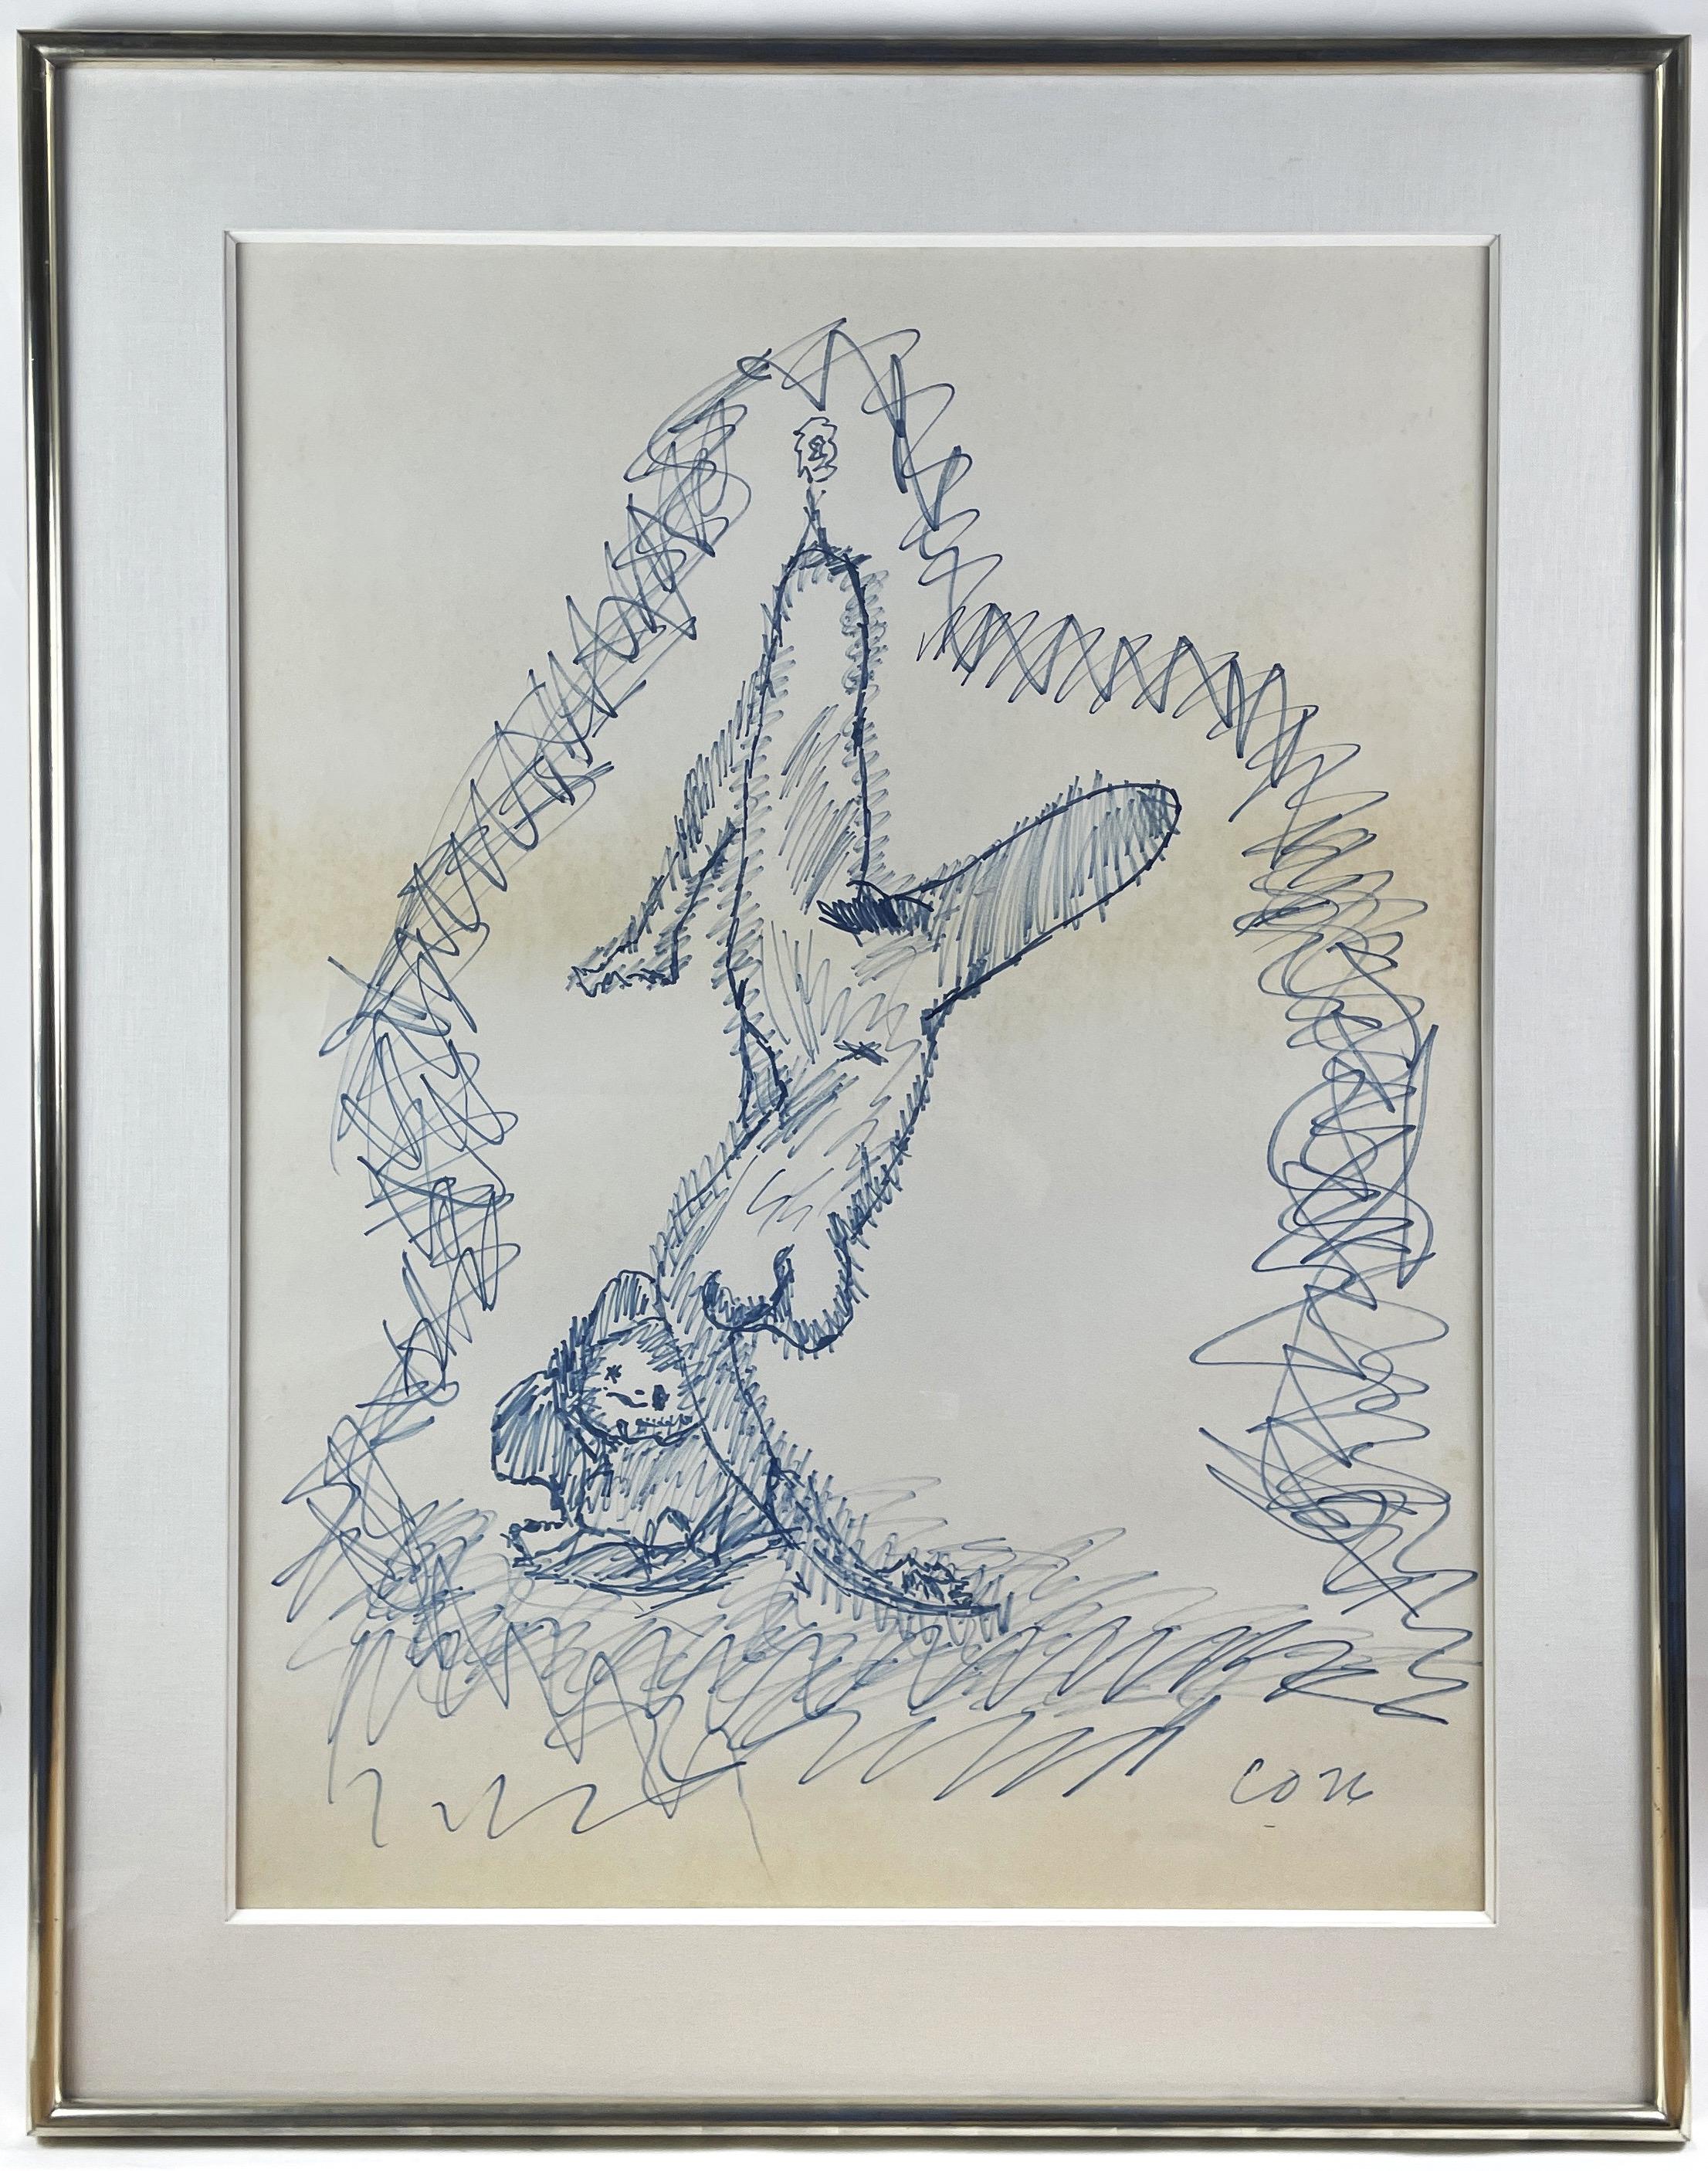 Claes Oldenburg a encadré un dessin sur carton représentant une femme suspendue à une sorte de câble ou de corde, retenu par une poulie. La femme pendue est un motif récurrent dans l'œuvre d'Oldenburg, qu'il s'agisse de représentations sculpturales